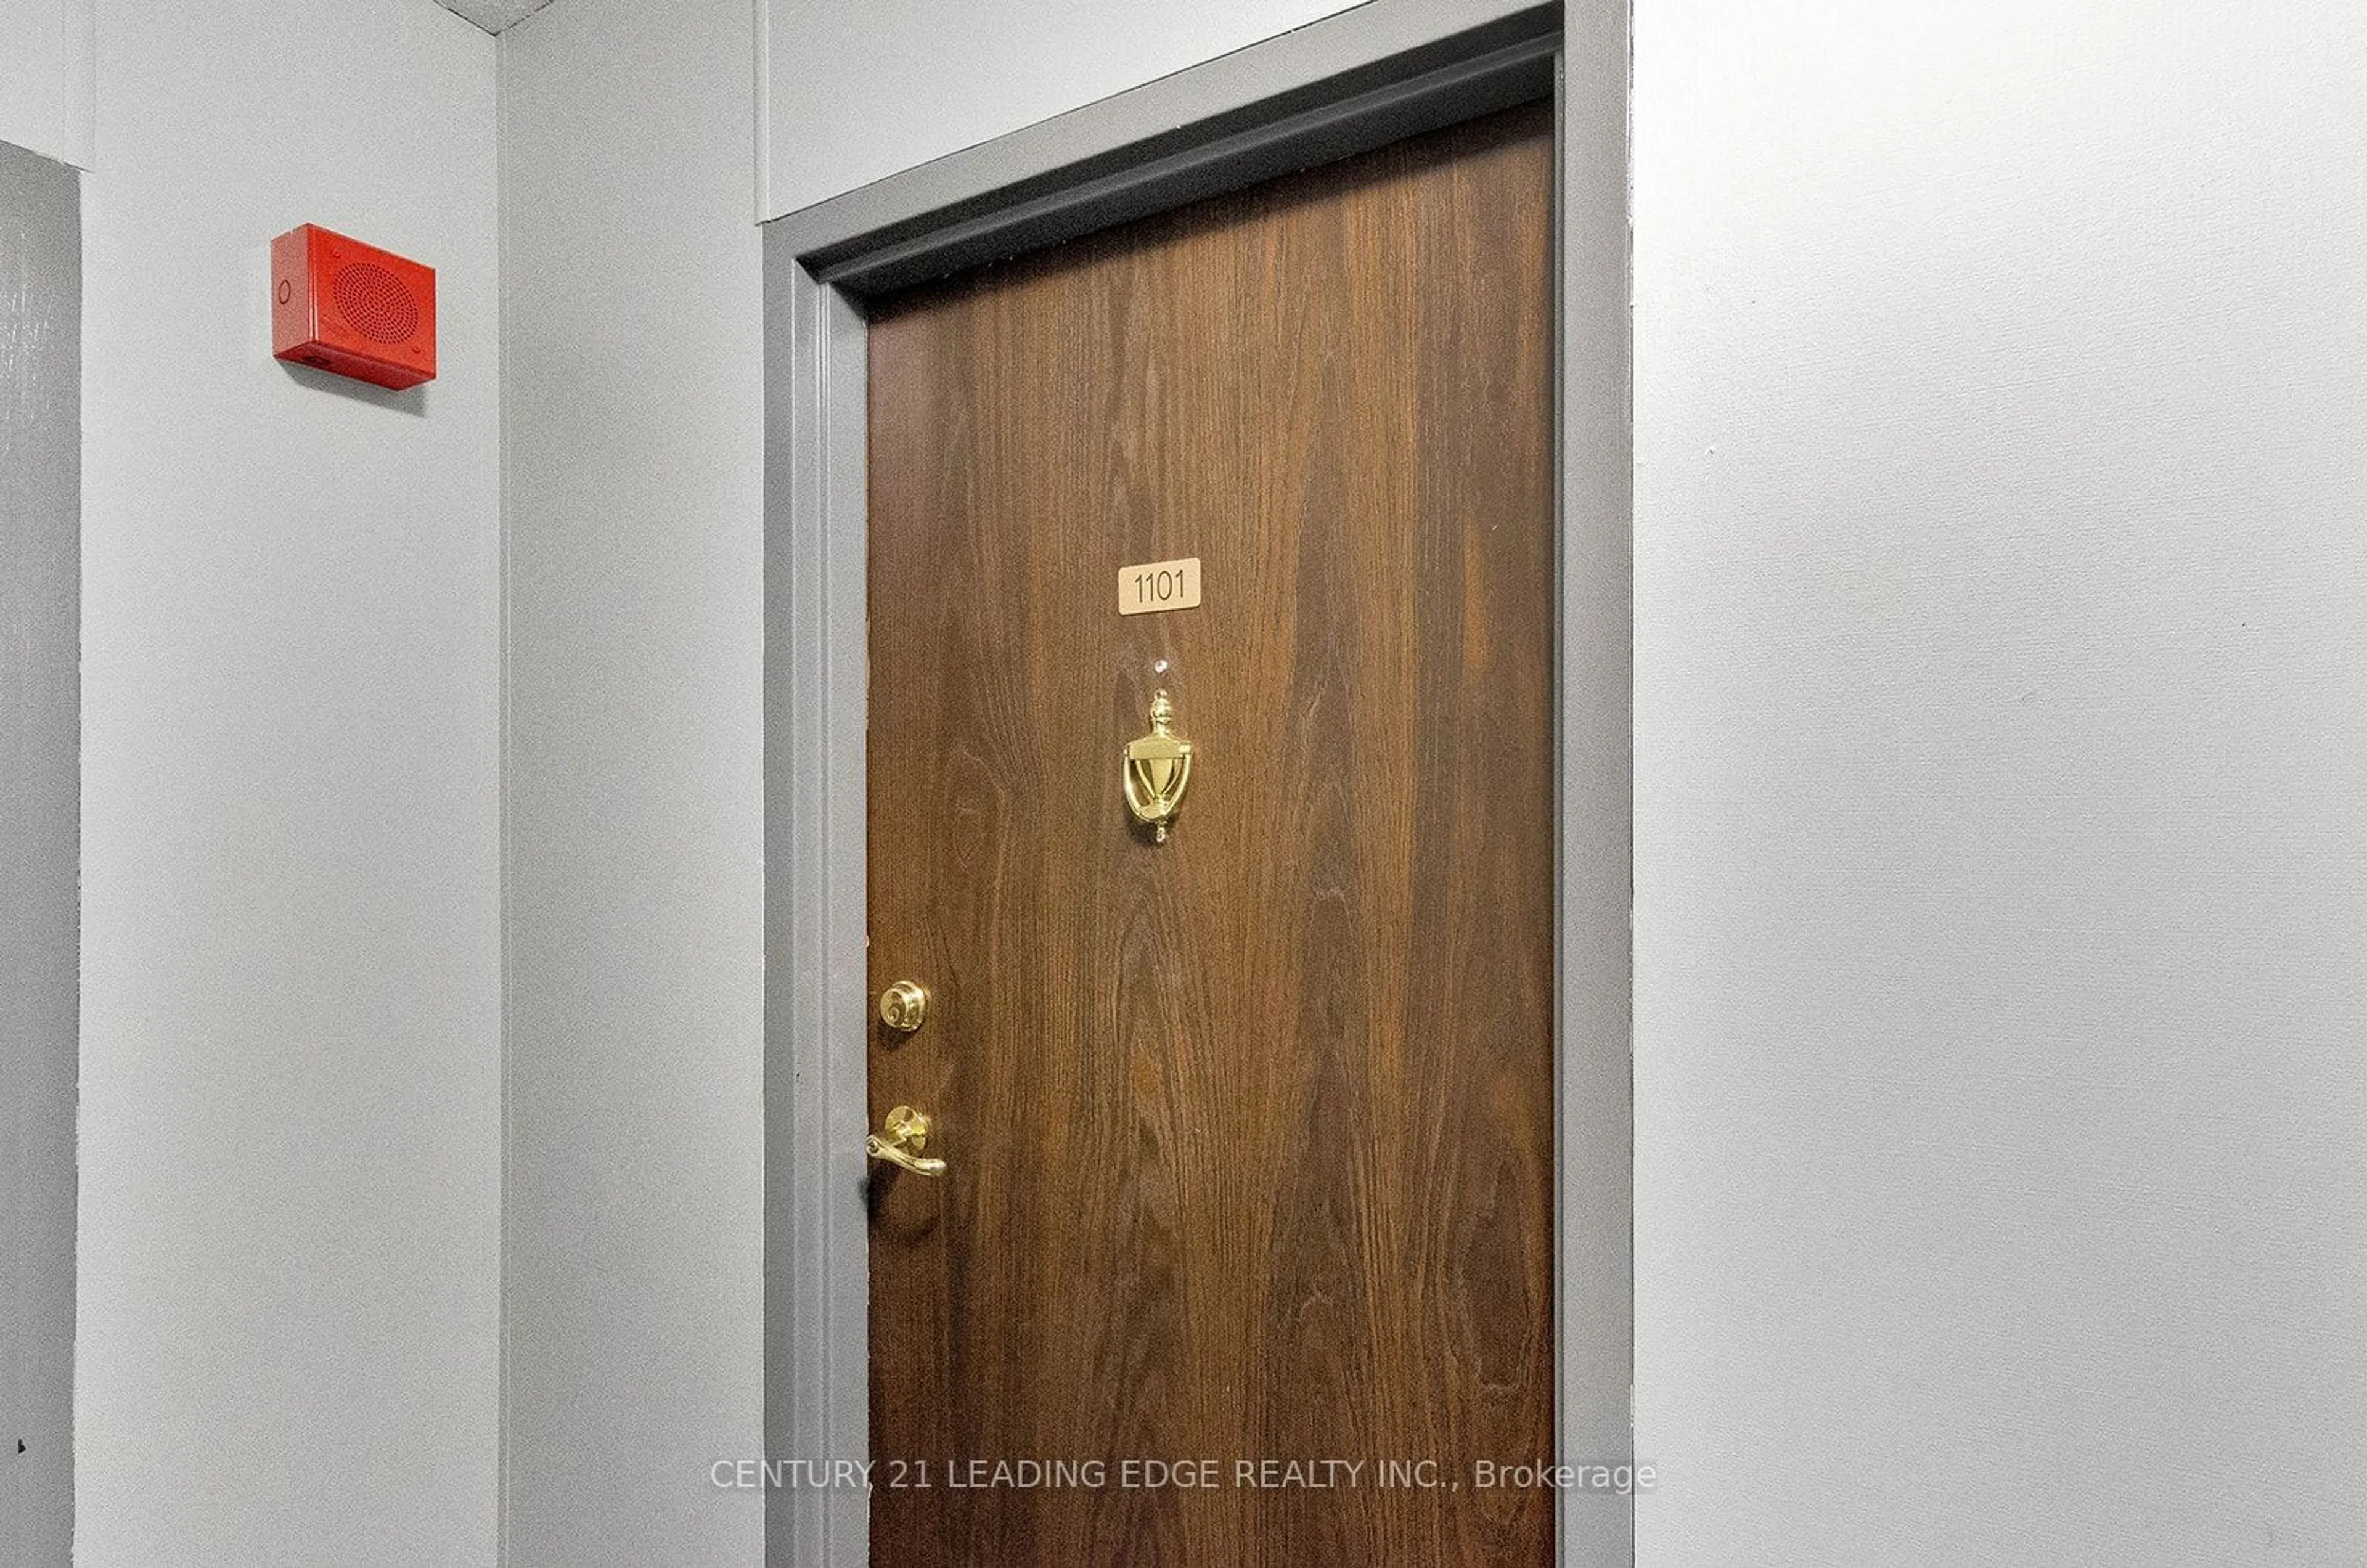 Indoor entryway for 380 Dixon Rd #1101, Toronto Ontario M9R 1T3